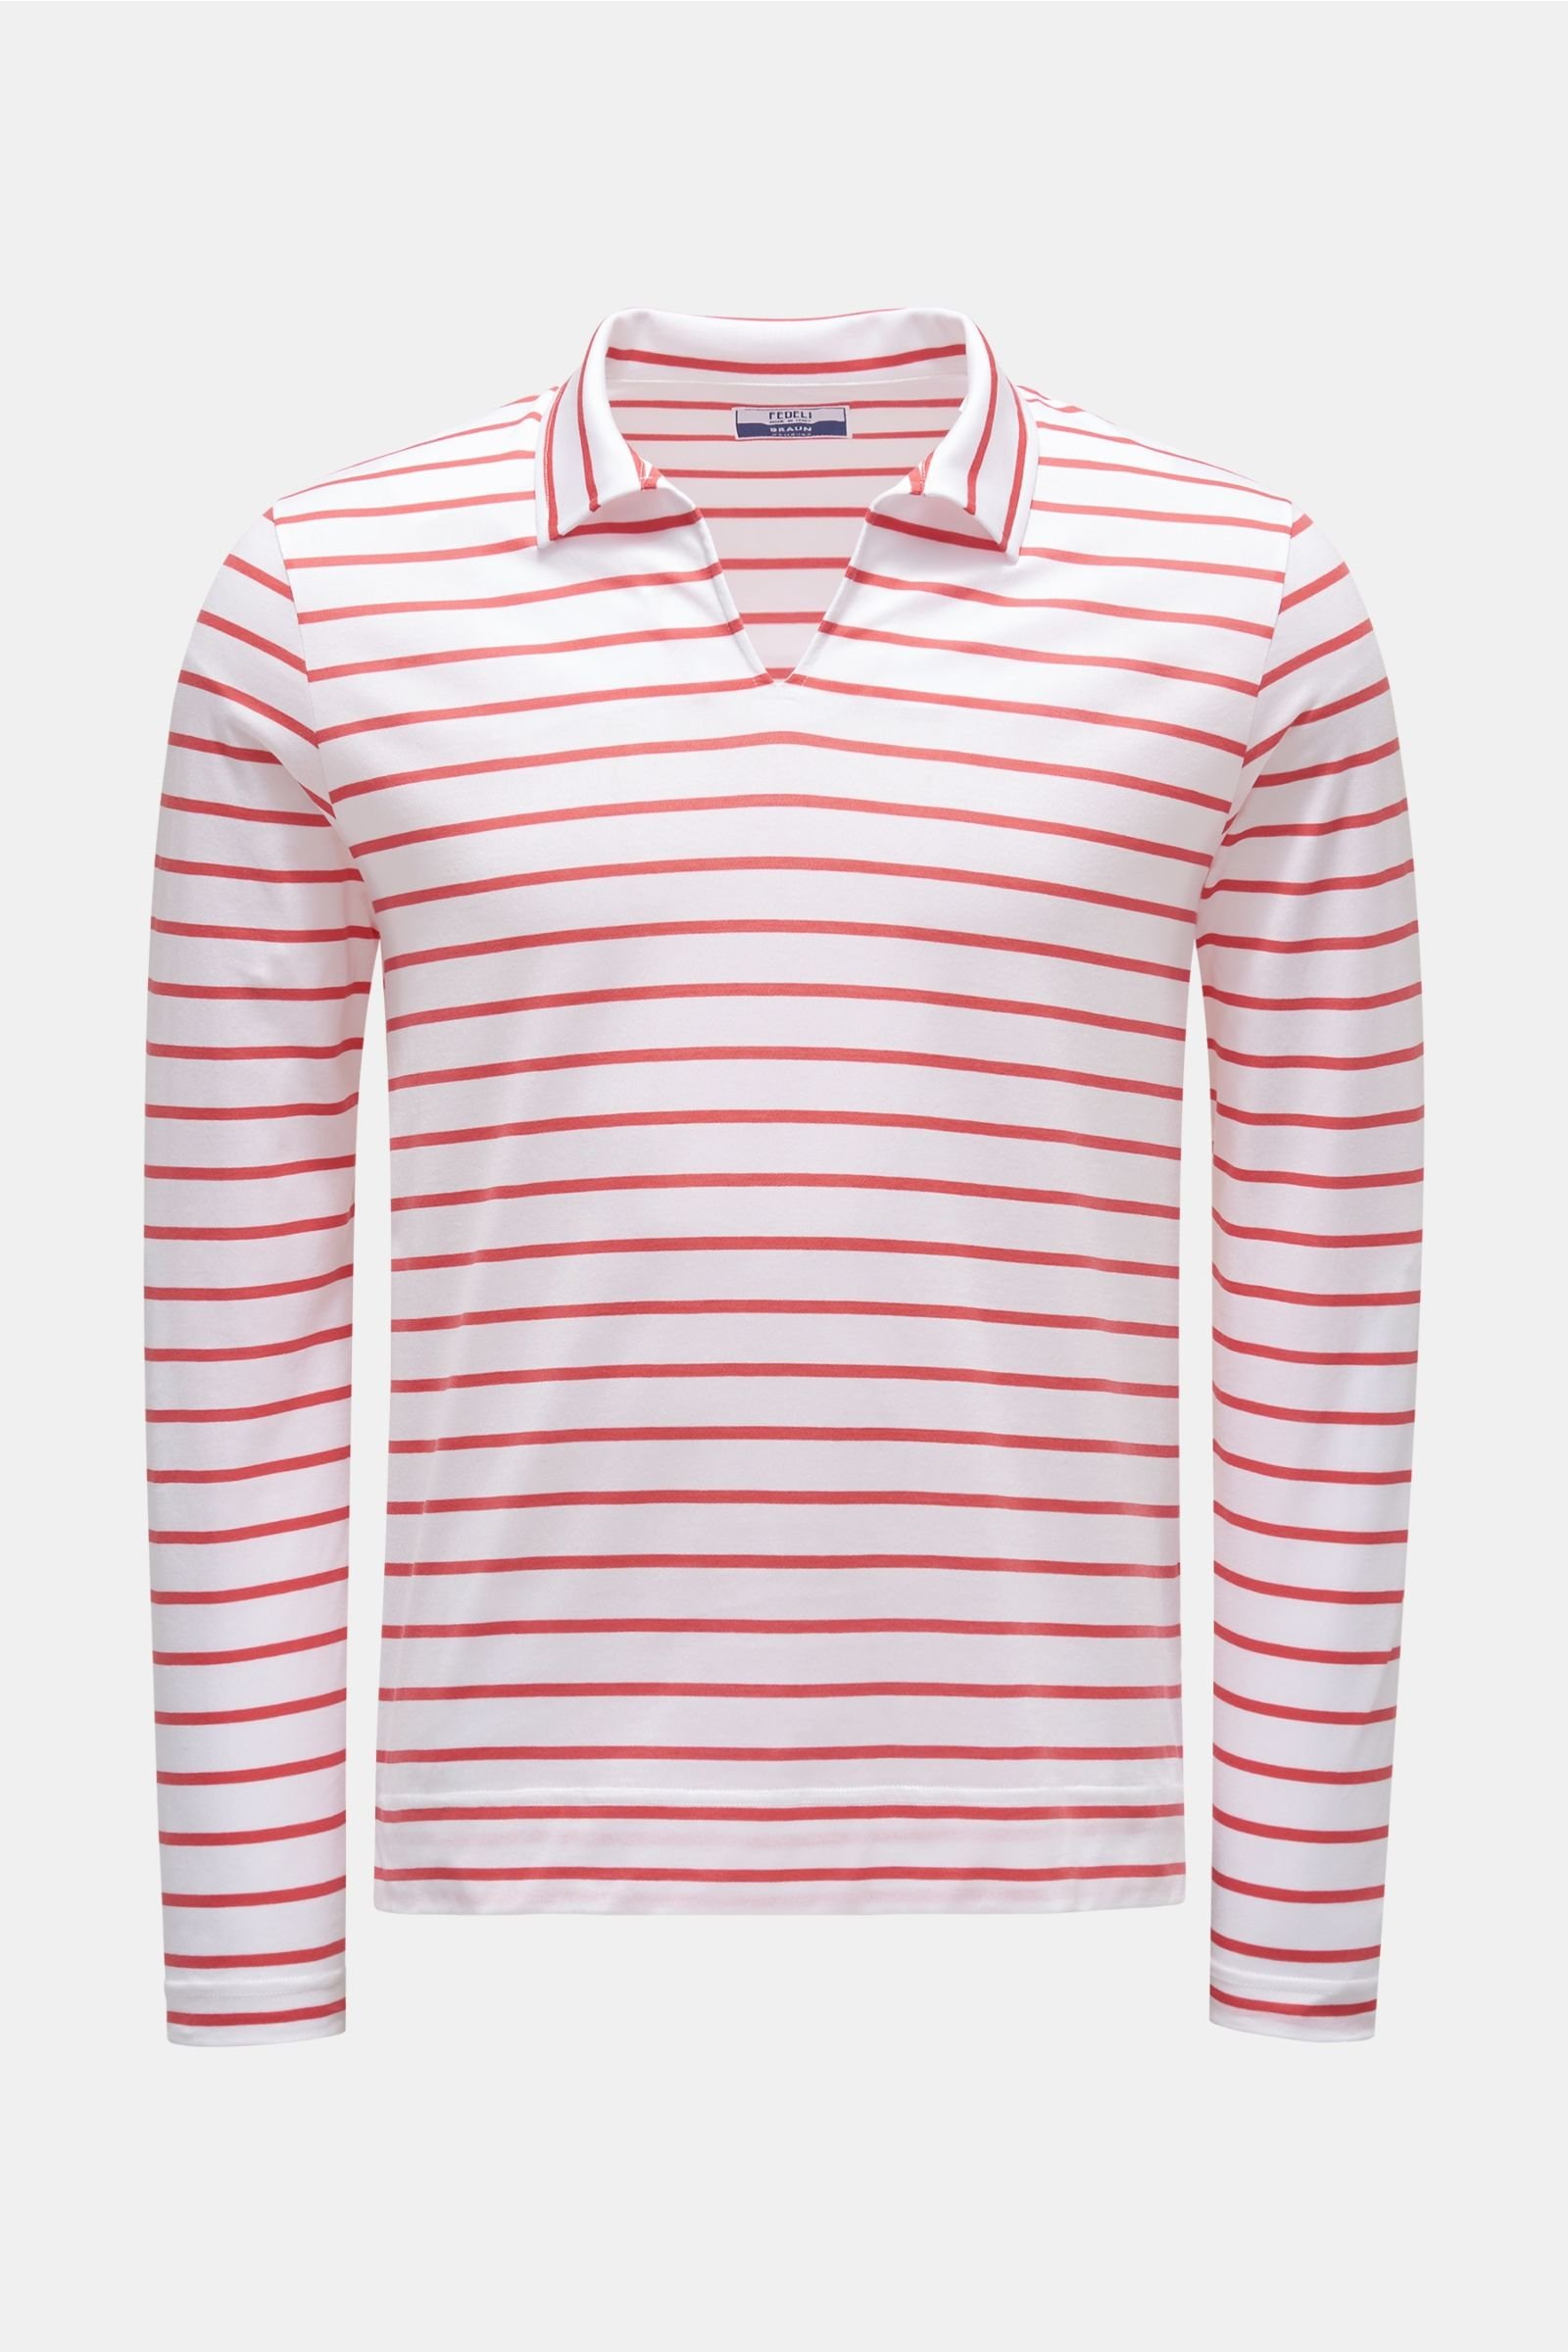 Longsleeve-Poloshirt 'Peter' rot/weiß gestreift